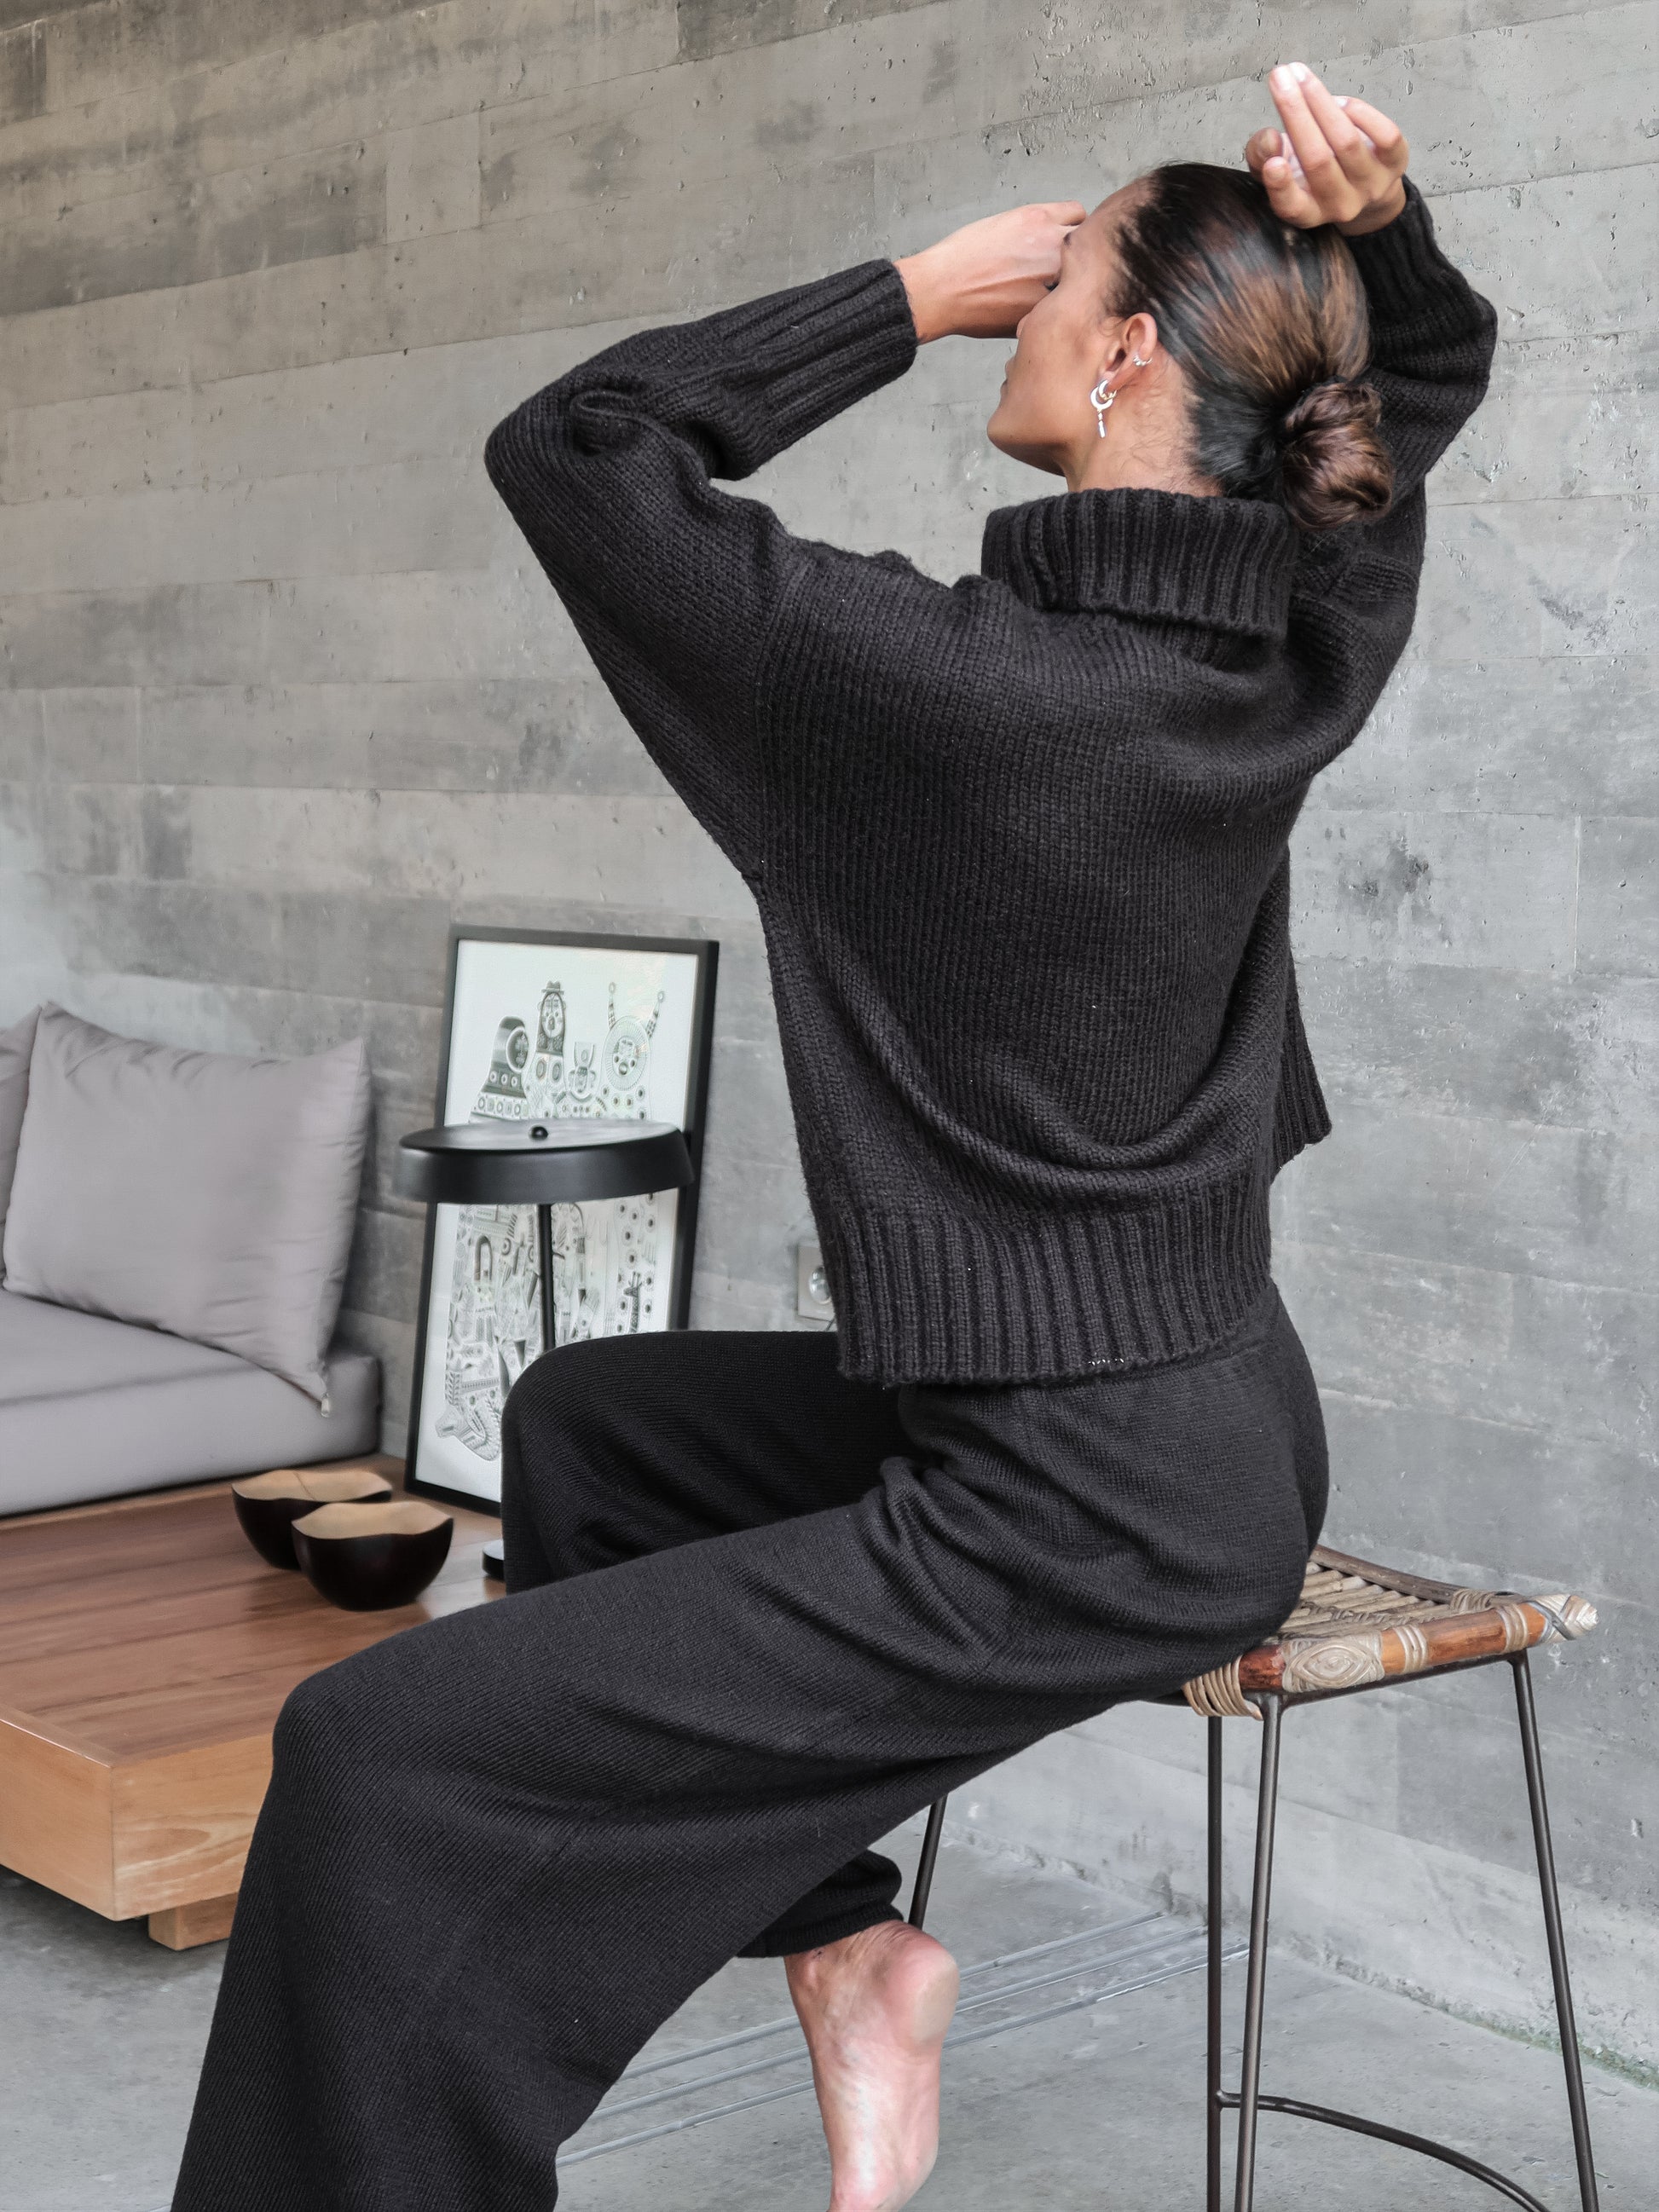 Berner Neck Sweater in Black - l u • c i e e